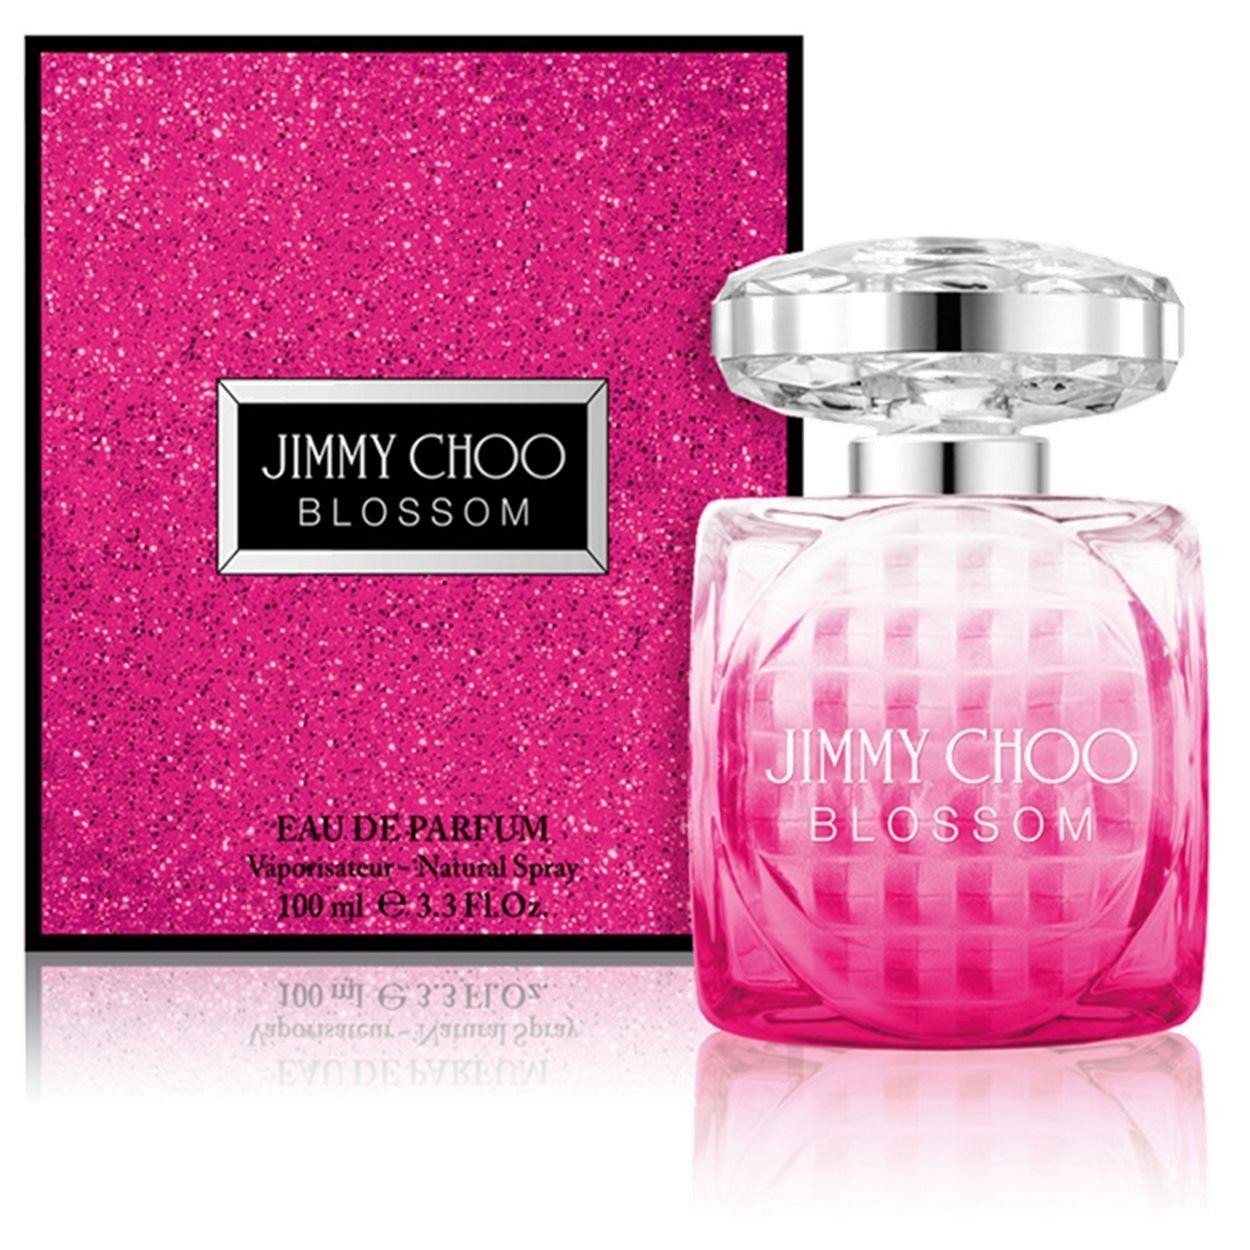 Jimmy Choo Blossom Eau de Parfum 100ml - D'Scentsation